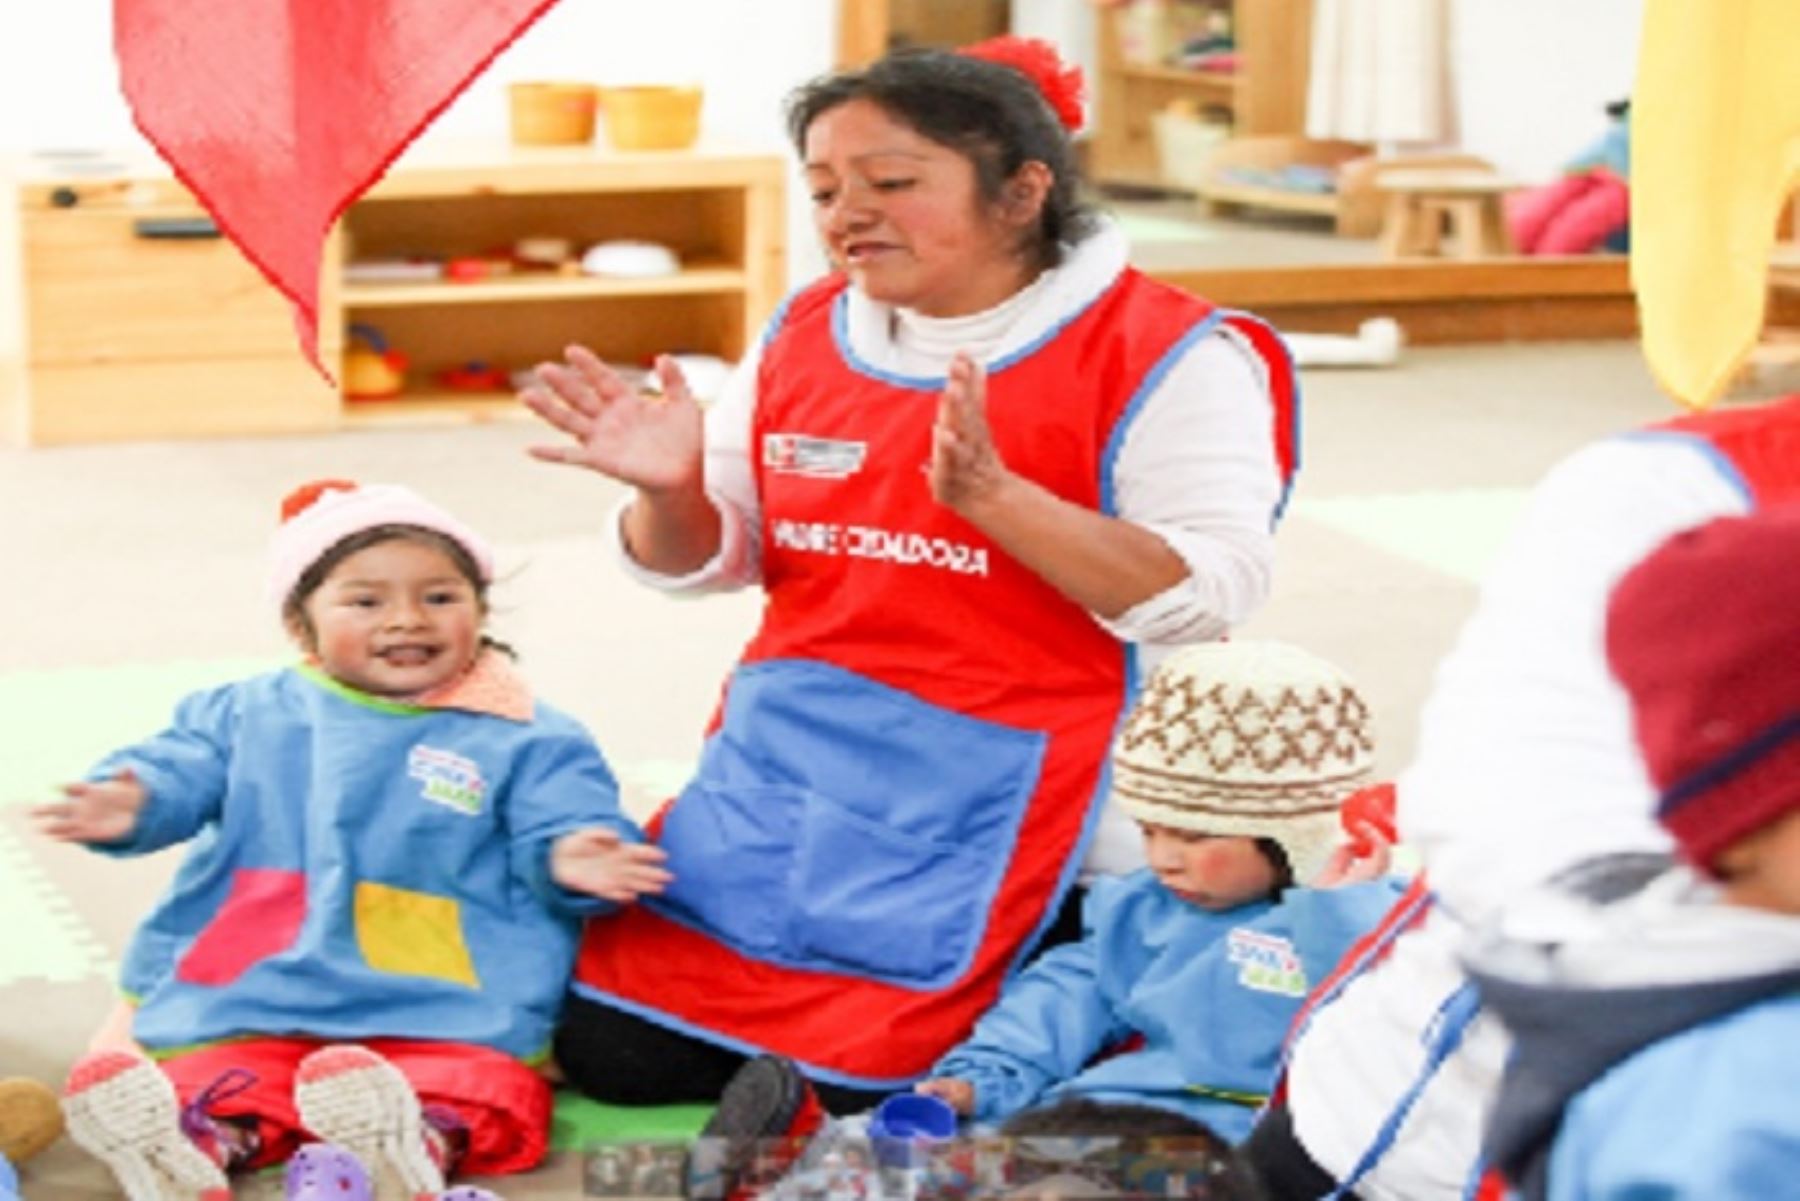 Huancavelica y Cajamarca serán las regiones piloto este año para desarrollar la Estrategia de Gestión Territorial “Primero la Infancia”, que busca incrementar el acceso de niños y niñas a un paquete integrado de servicios priorizados desde la gestación hasta los 5 años.